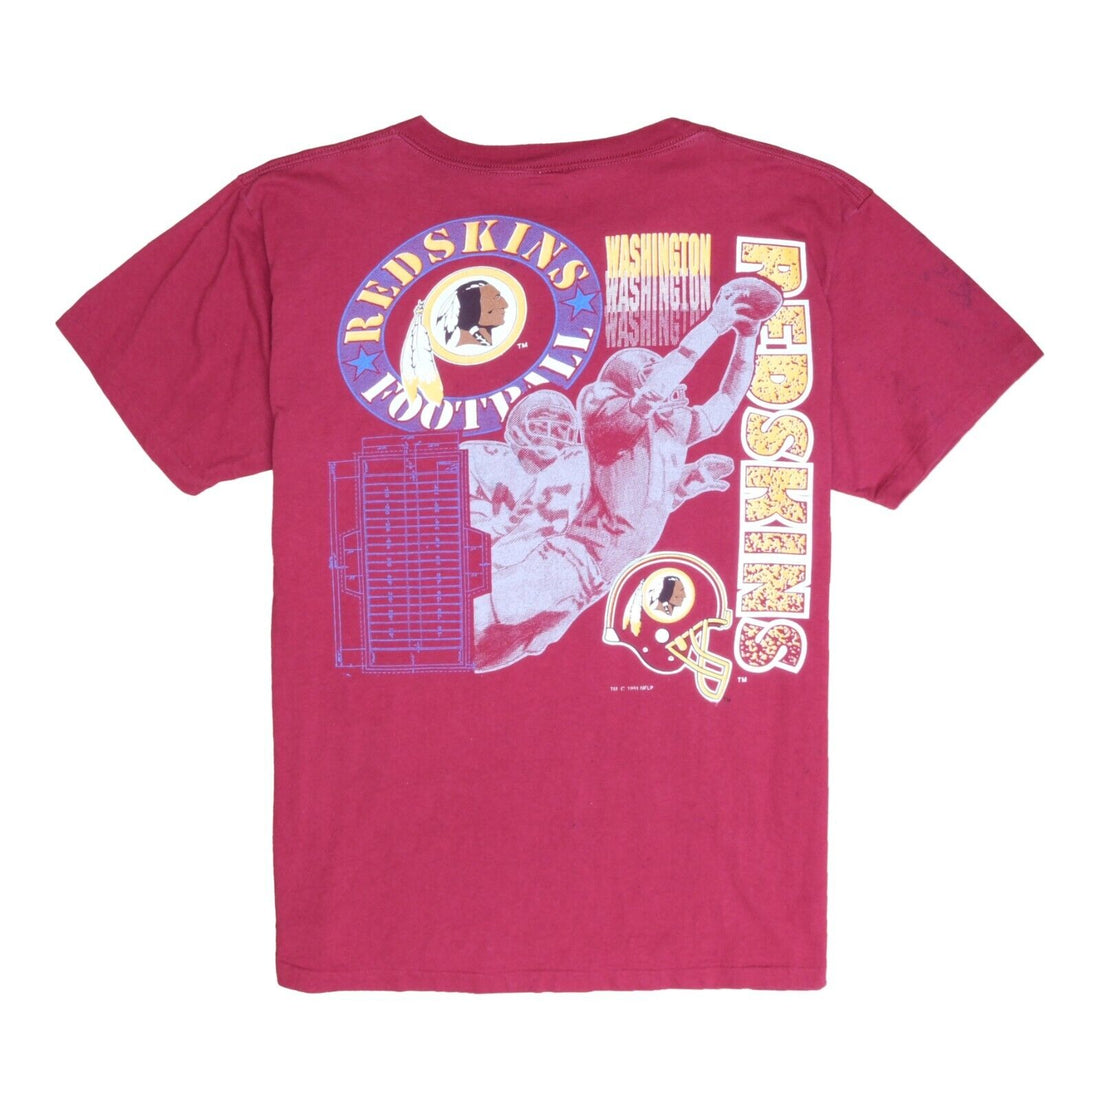 Vintage Washington Redskins Logo 7 T-Shirt Size XL Double Sided 1991 90s NFL